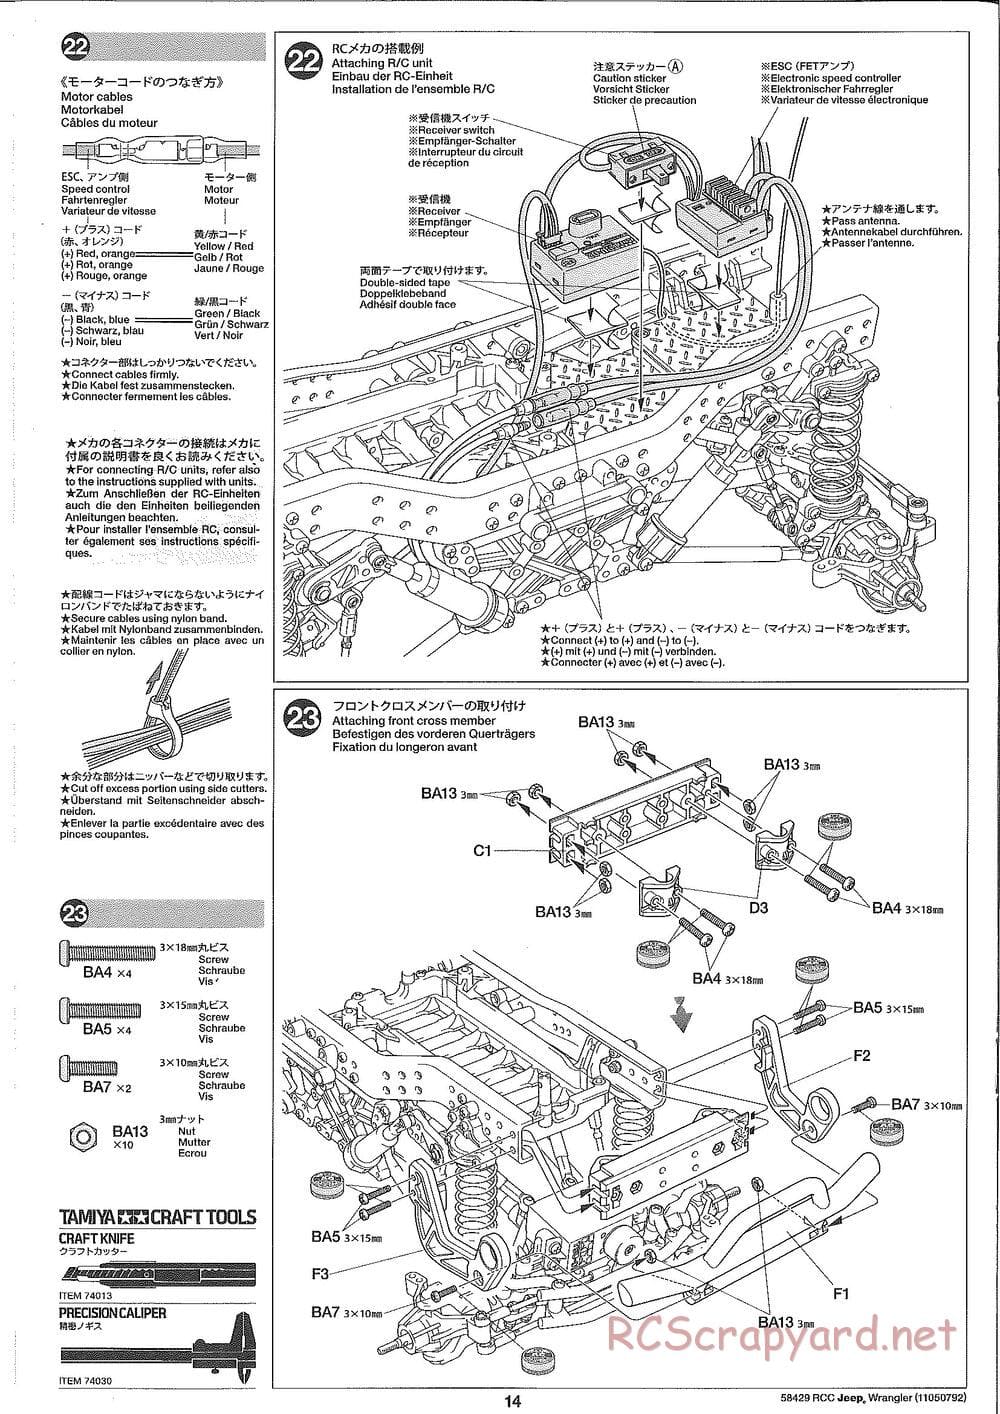 Tamiya - Jeep Wrangler - CR-01 Chassis - Manual - Page 14